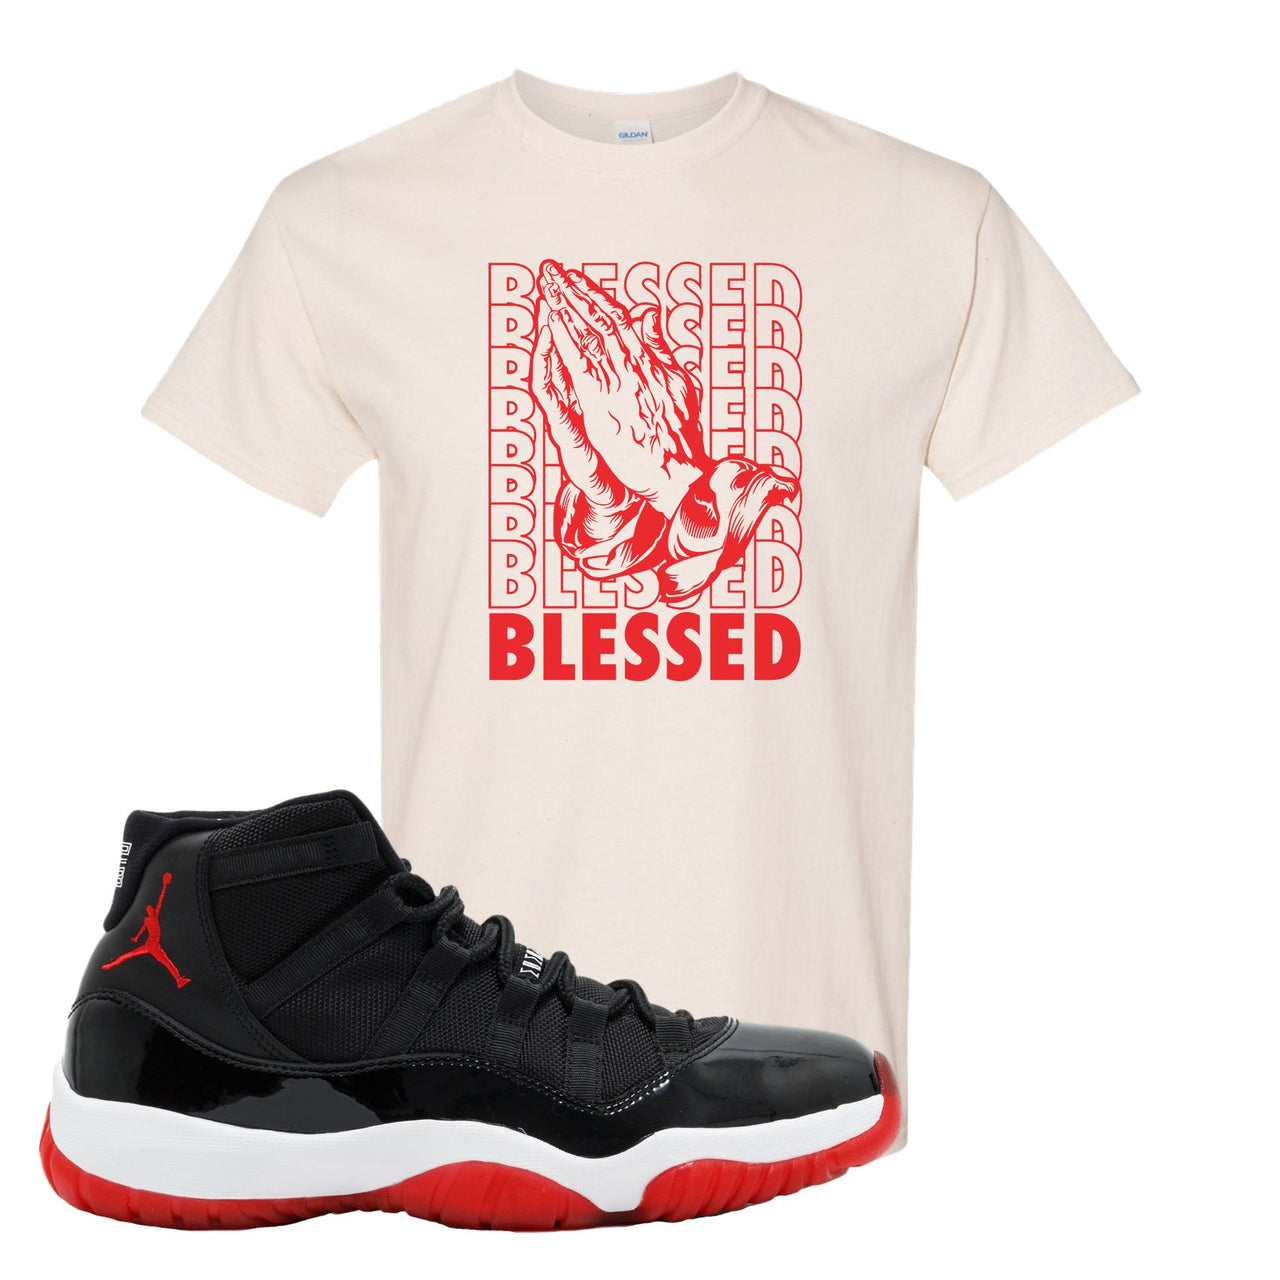 Jordan 11 Bred Blessed White Sneaker Hook Up T-Shirt